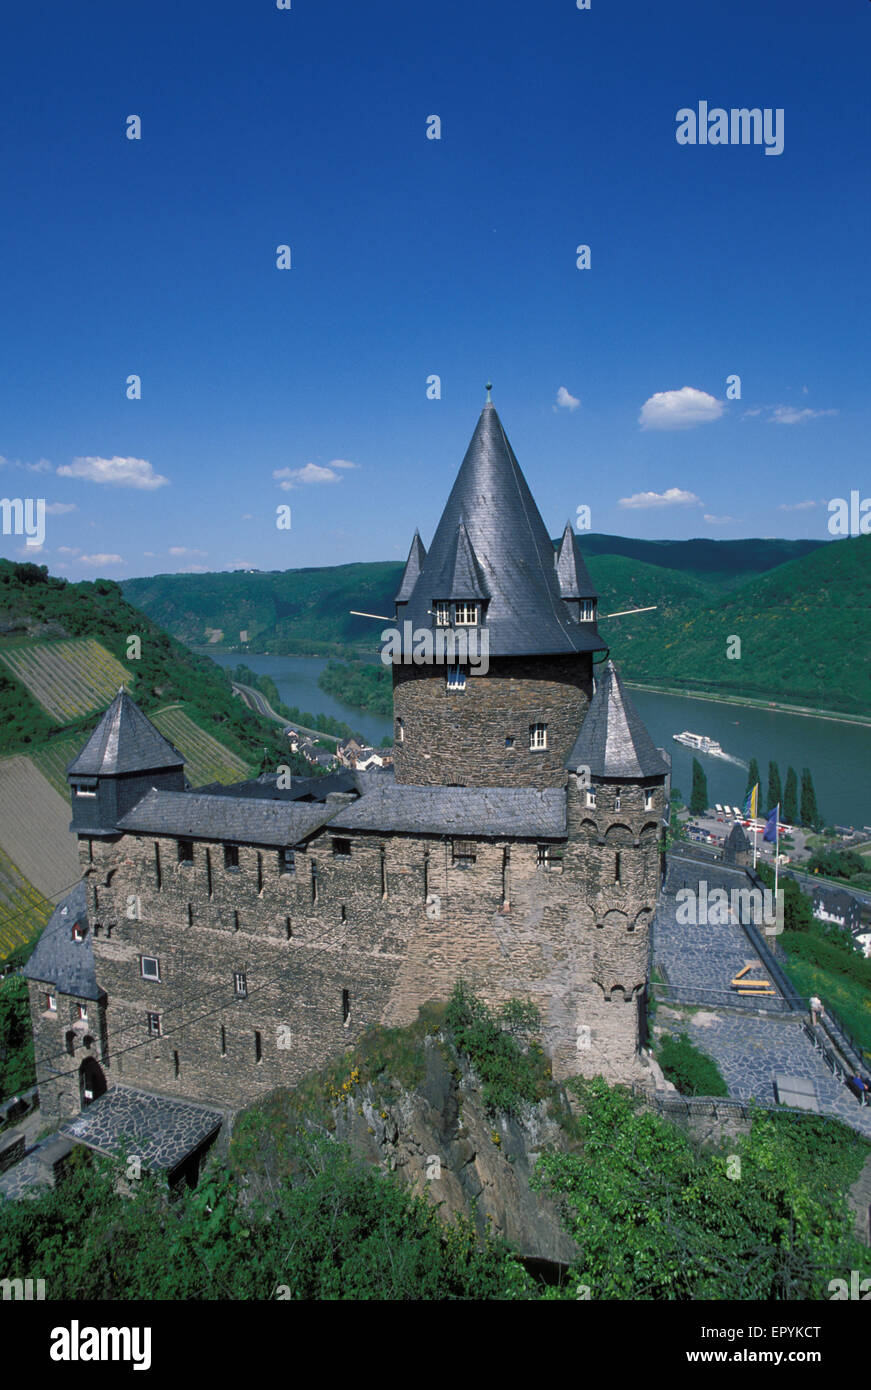 DEU, l'Allemagne, le château de Stahleck Bacharach au bord du Rhin. DEU, Deutschland, Burg bei Stahleck Bacharach am Rhein. Banque D'Images